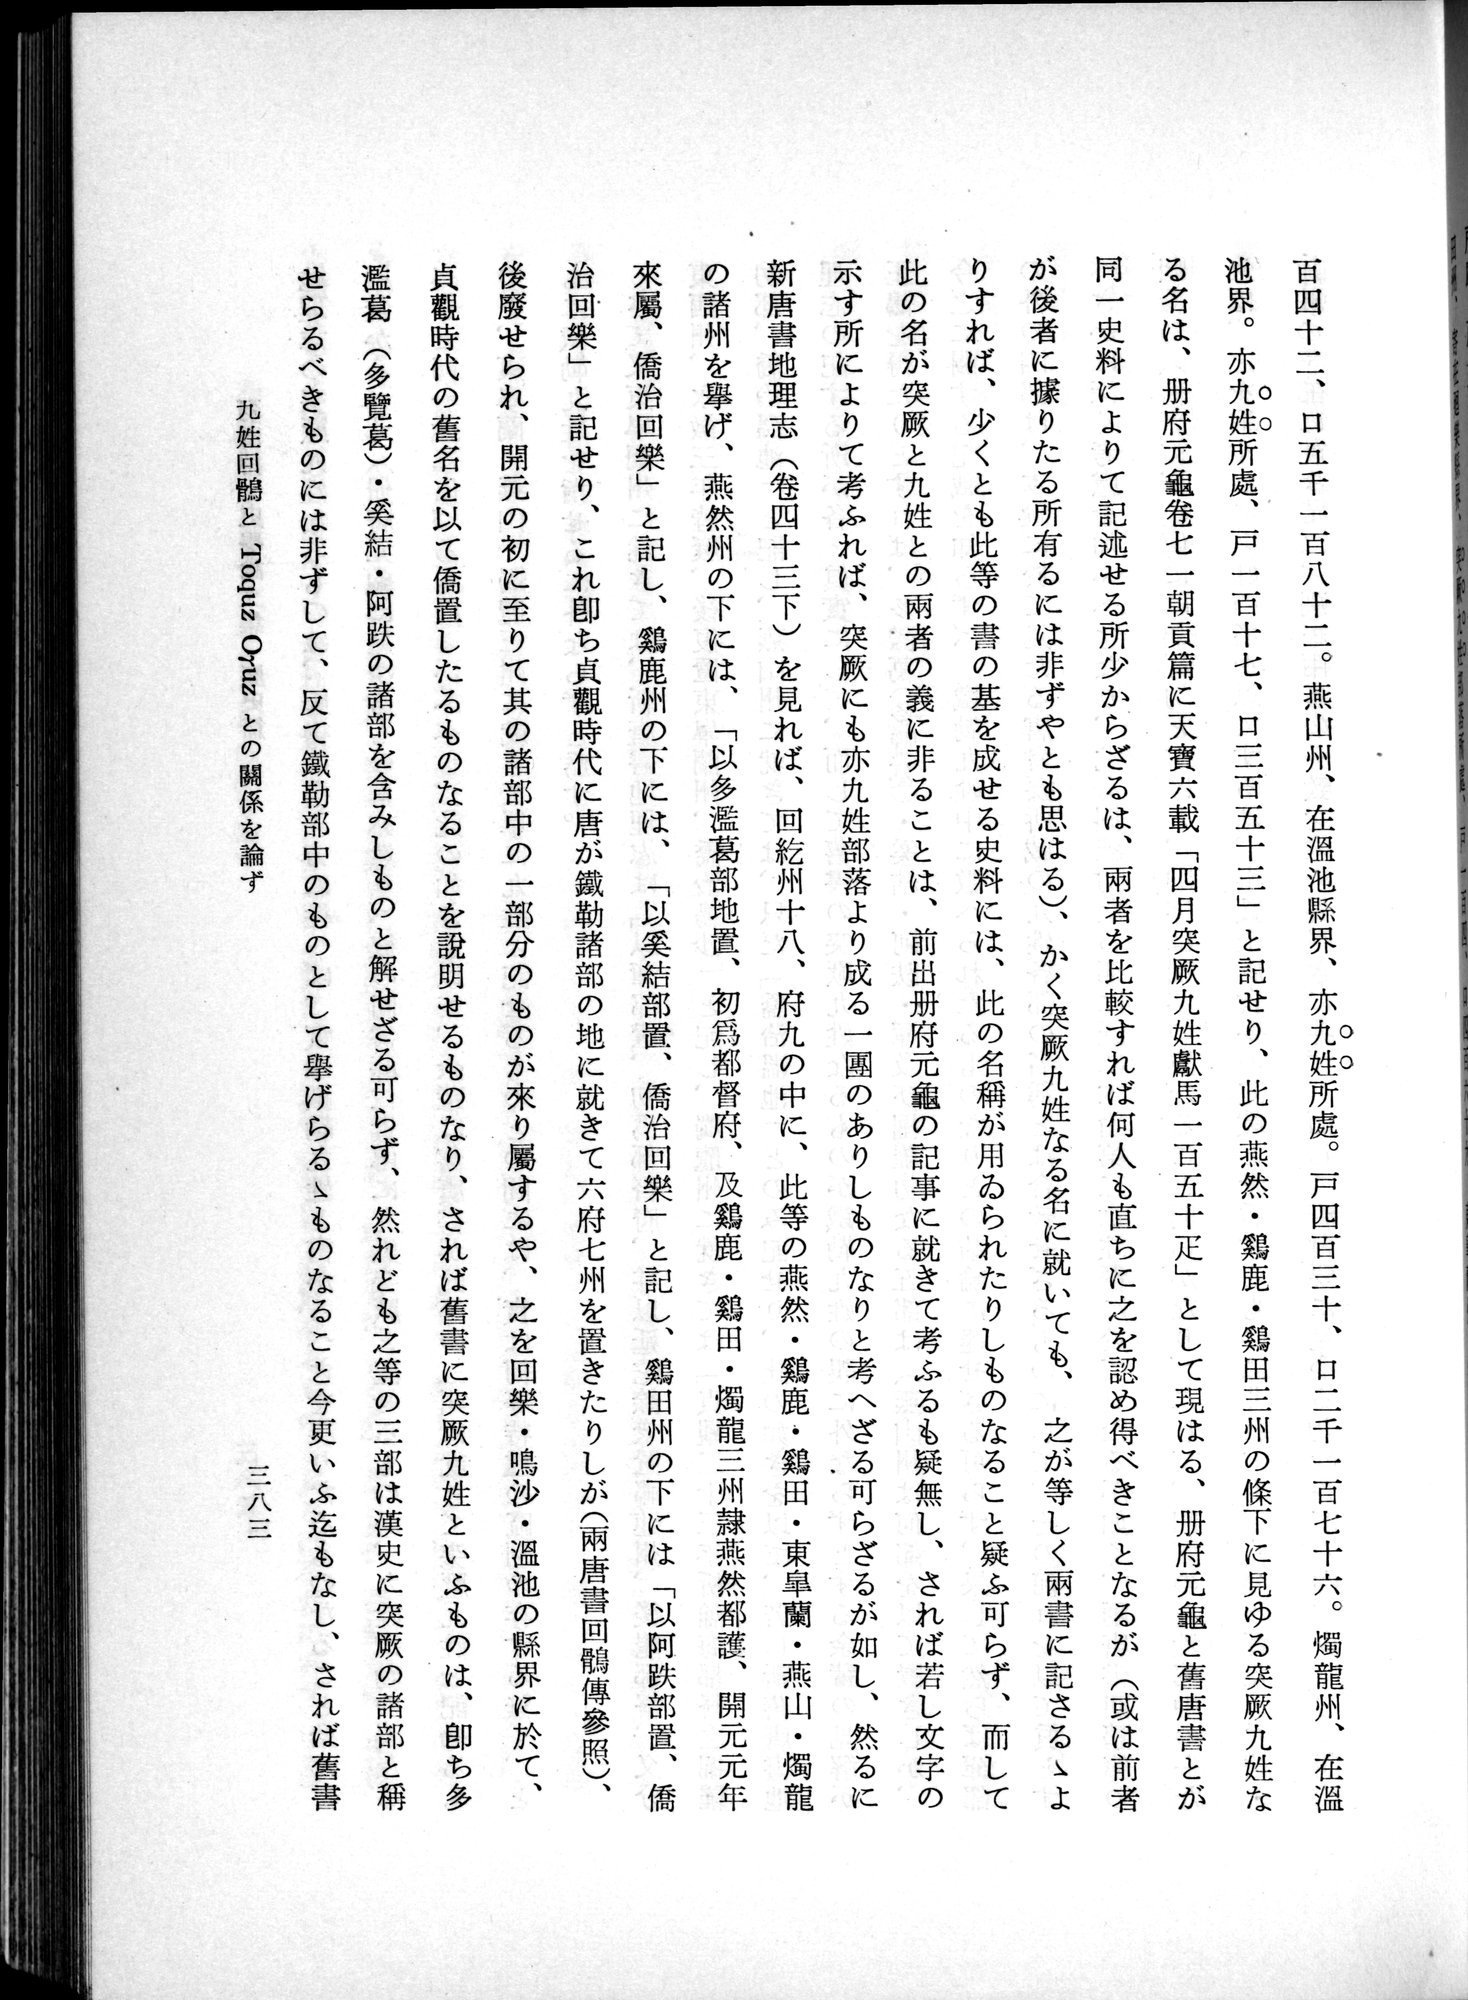 羽田博士史学論文集 : vol.1 / Page 421 (Grayscale High Resolution Image)